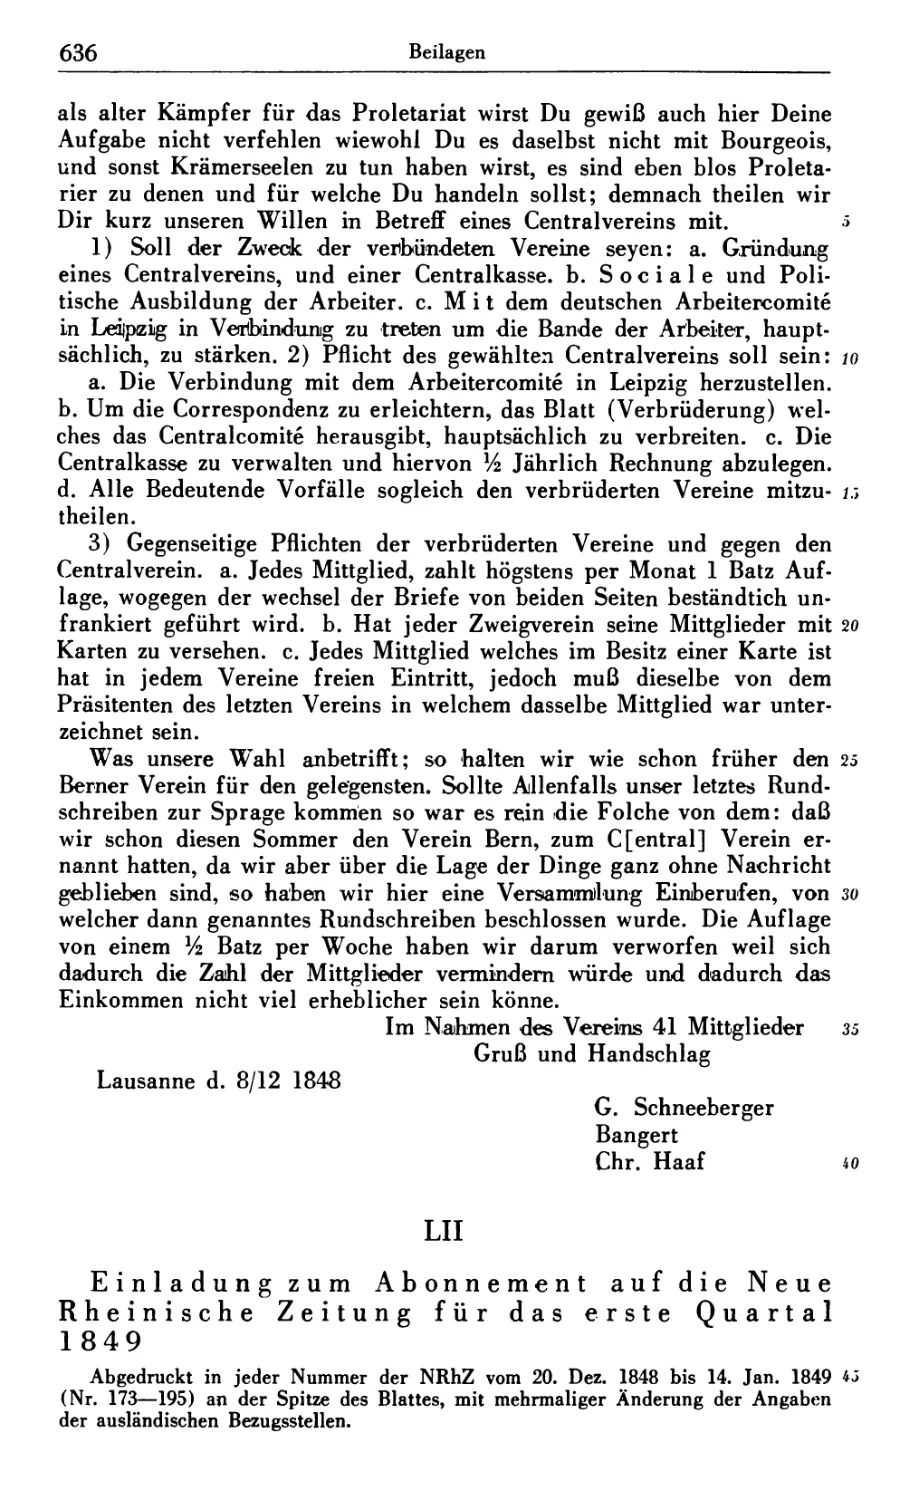 LII. Einladung zum Abonnement auf die Neue Rheinische Zeitung für das erste Quartal 1849